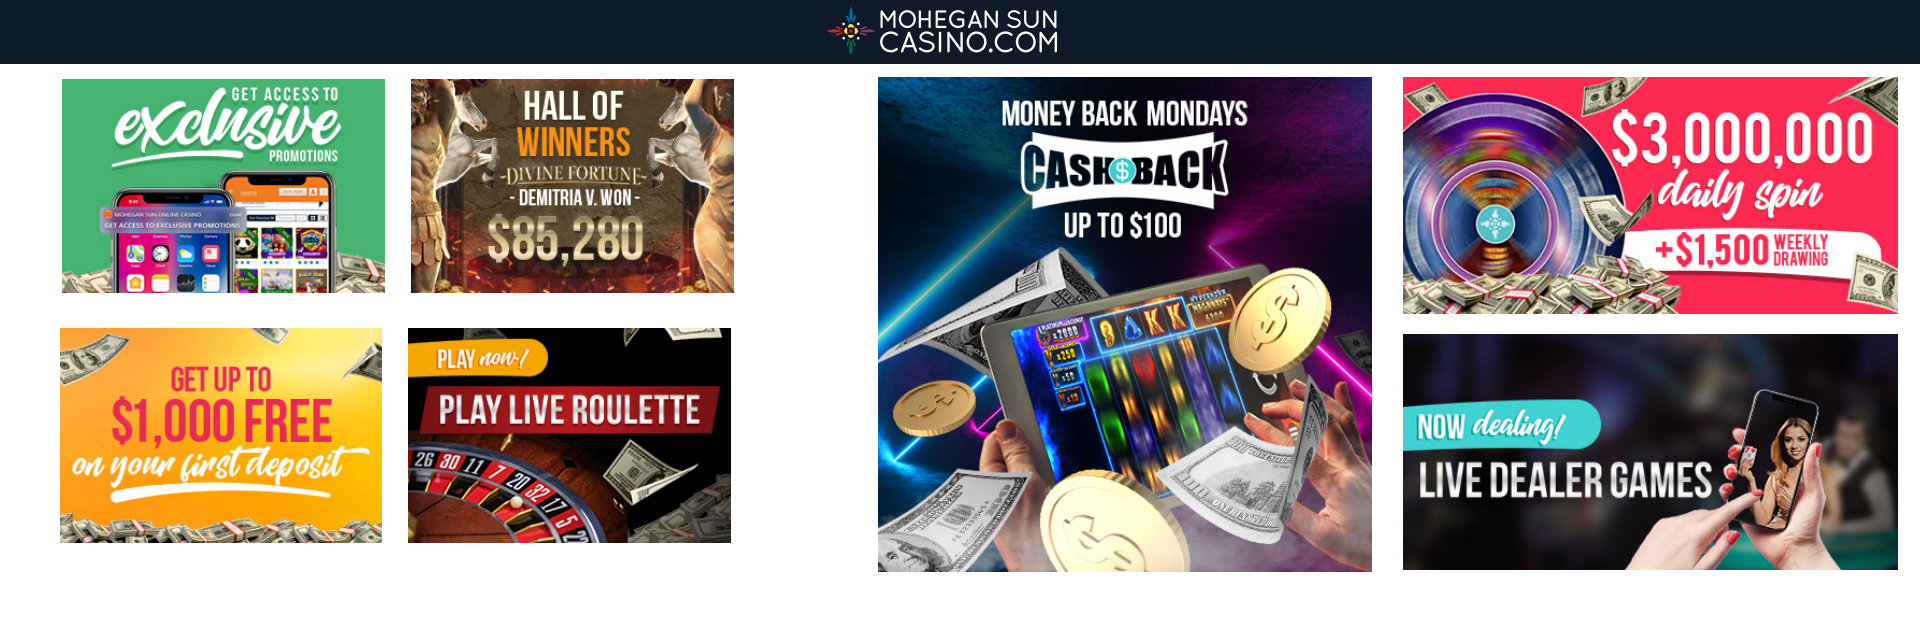 mohegan sun online casino bonus codes